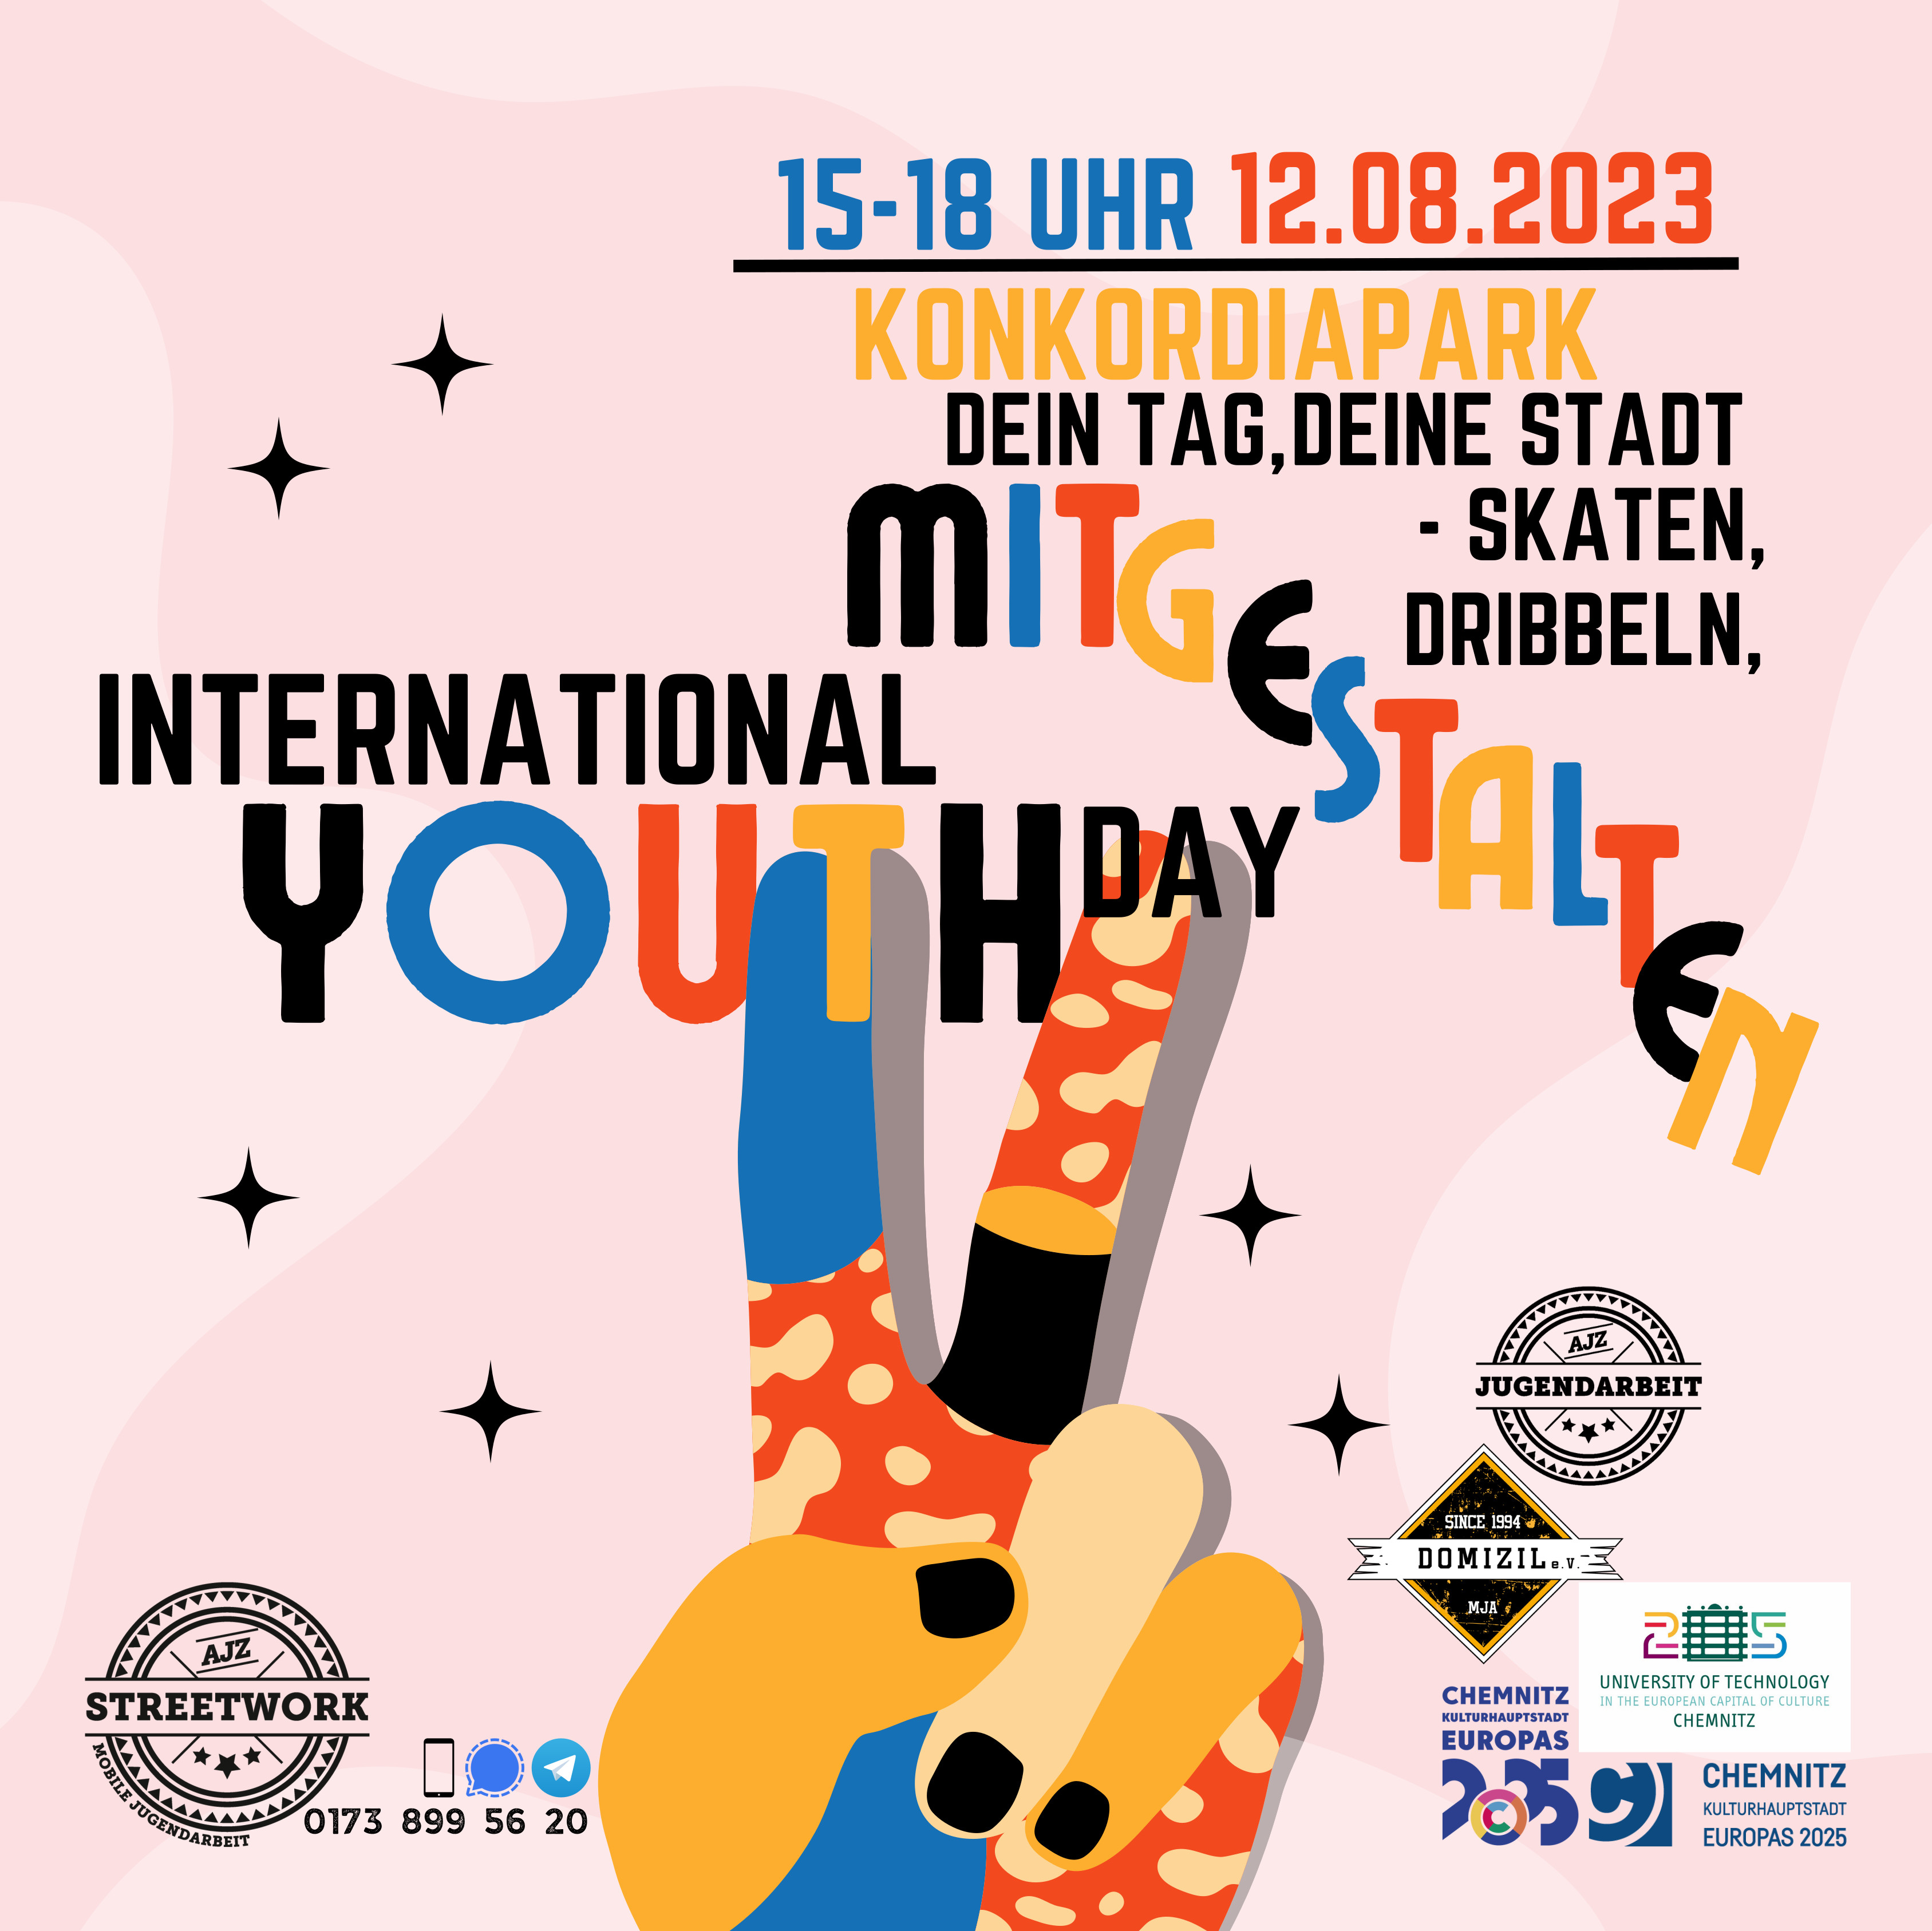 Poster zur Veranstaltung mit dem Titel "International Youth Day mitgestalten"